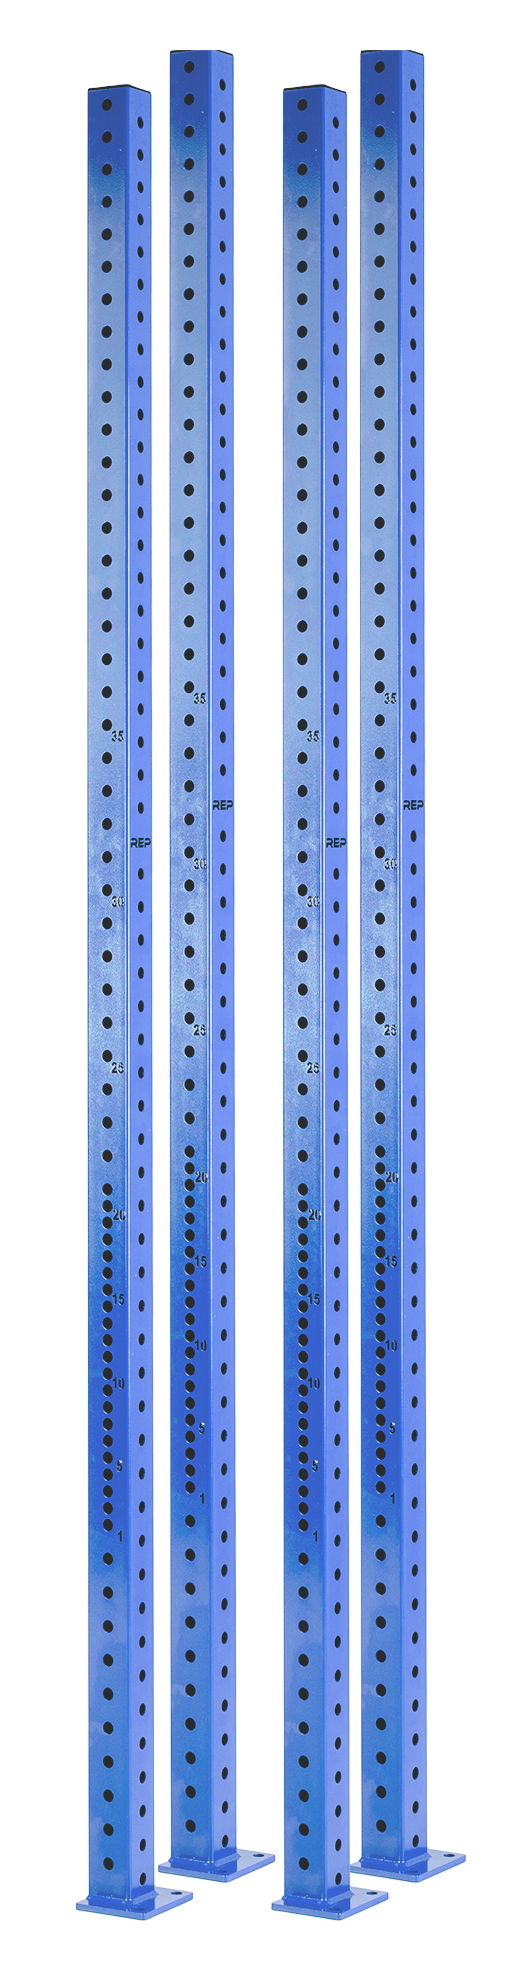 Rig Uprights - 4000 / Set / Blue